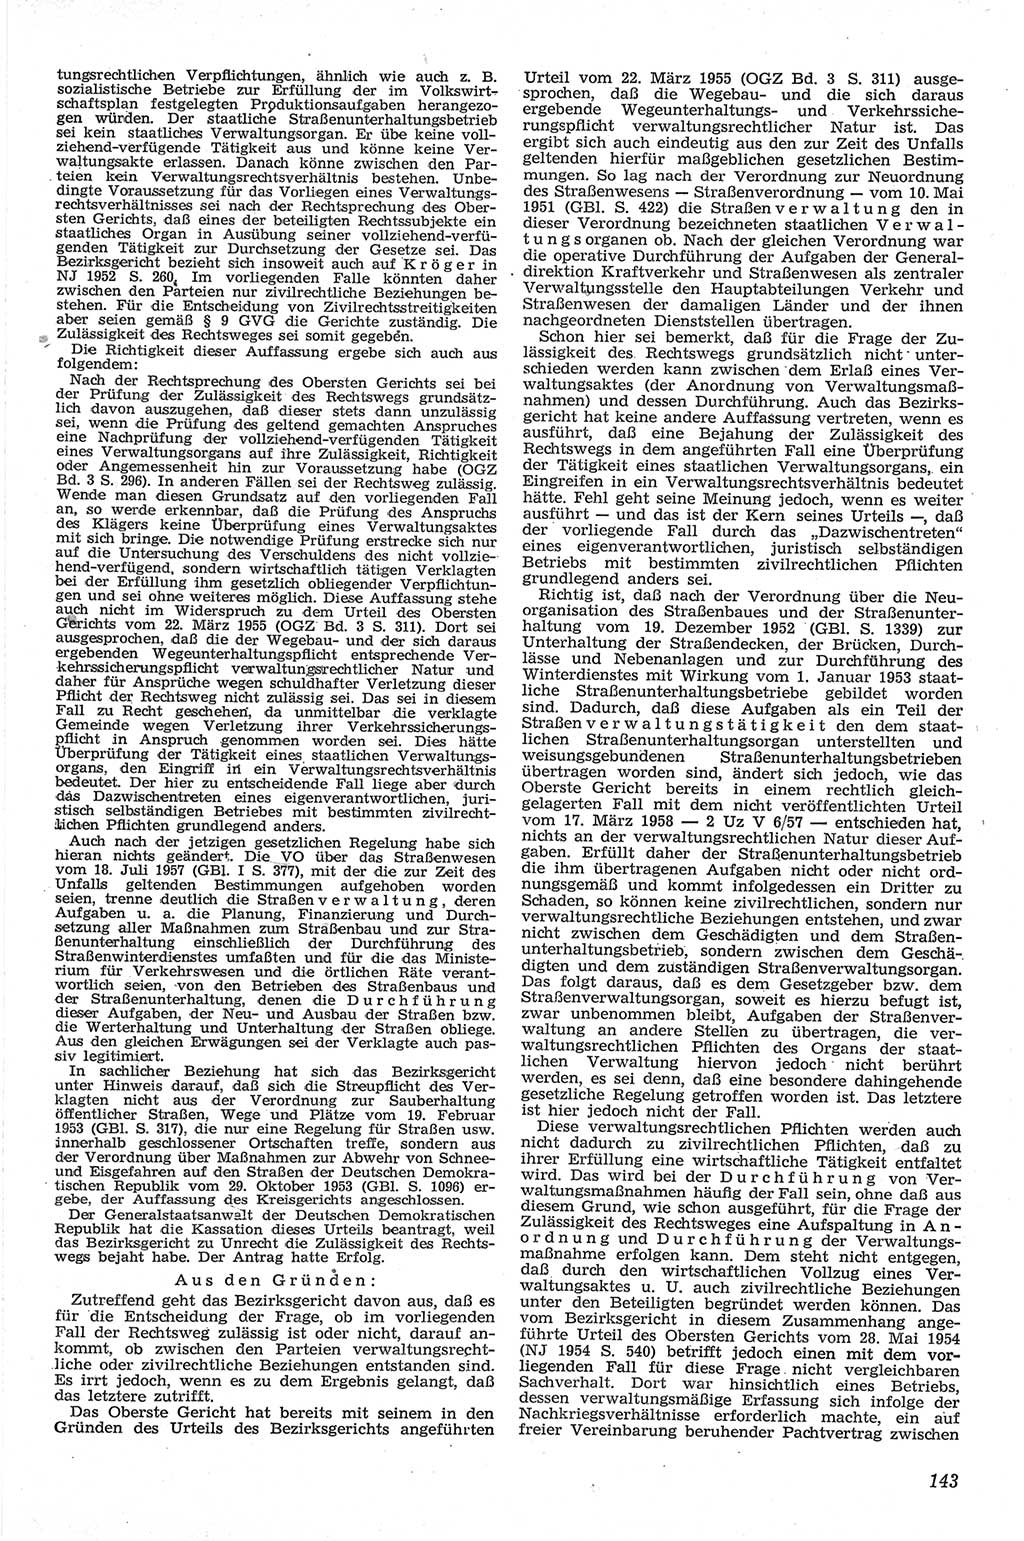 Neue Justiz (NJ), Zeitschrift für Recht und Rechtswissenschaft [Deutsche Demokratische Republik (DDR)], 13. Jahrgang 1959, Seite 143 (NJ DDR 1959, S. 143)